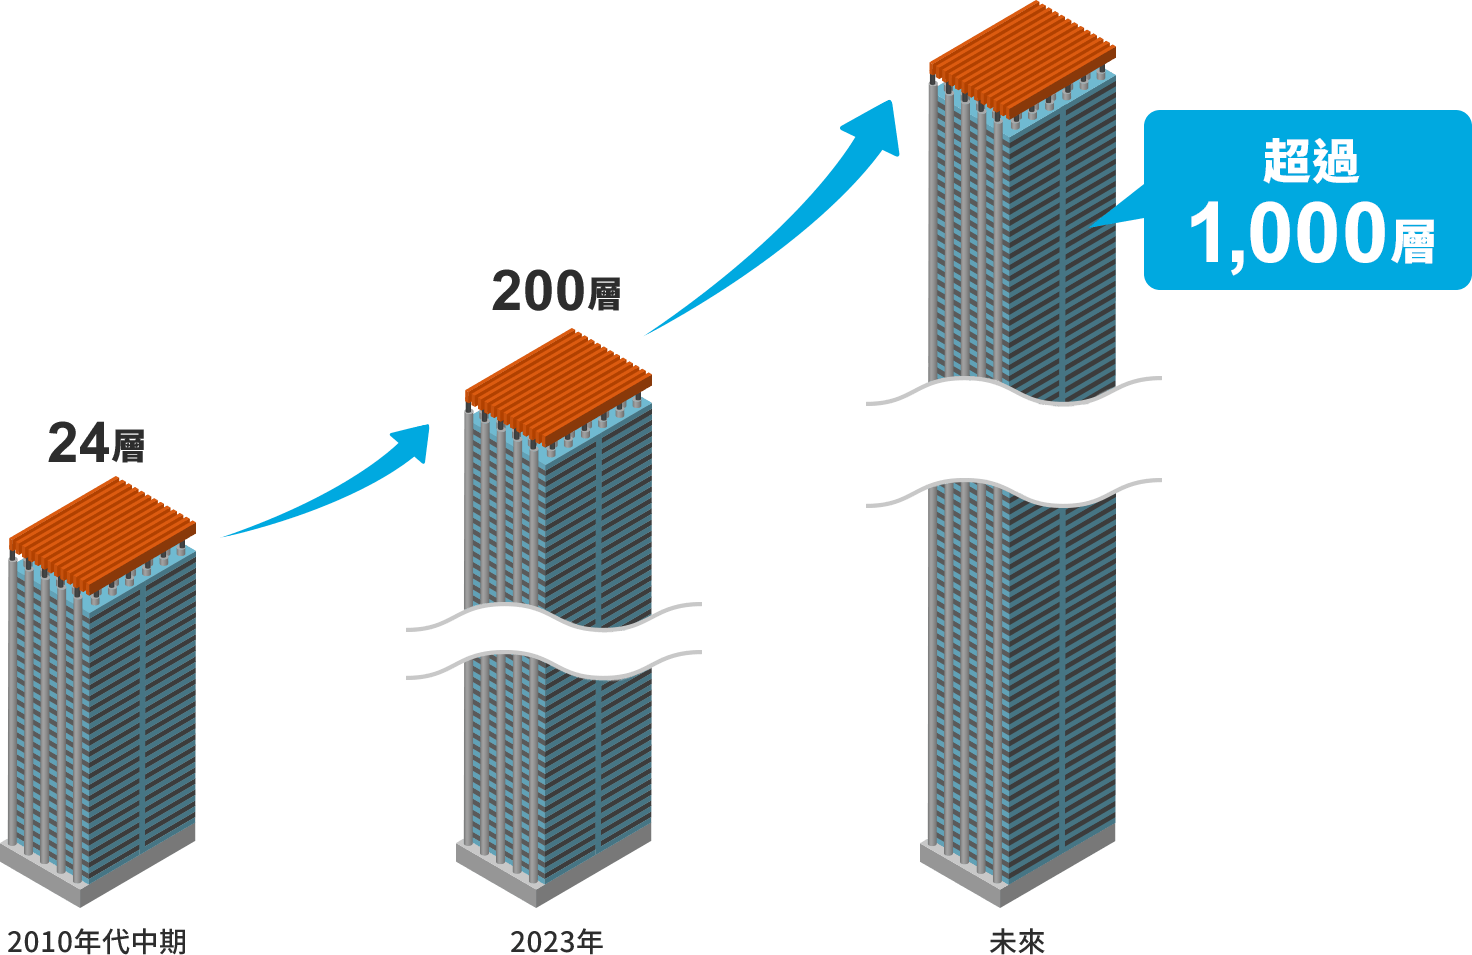 展示3D NAND堆疊革新技術的圖。2010年代中期為24層。2023年為200層。未來會超過1,000層。